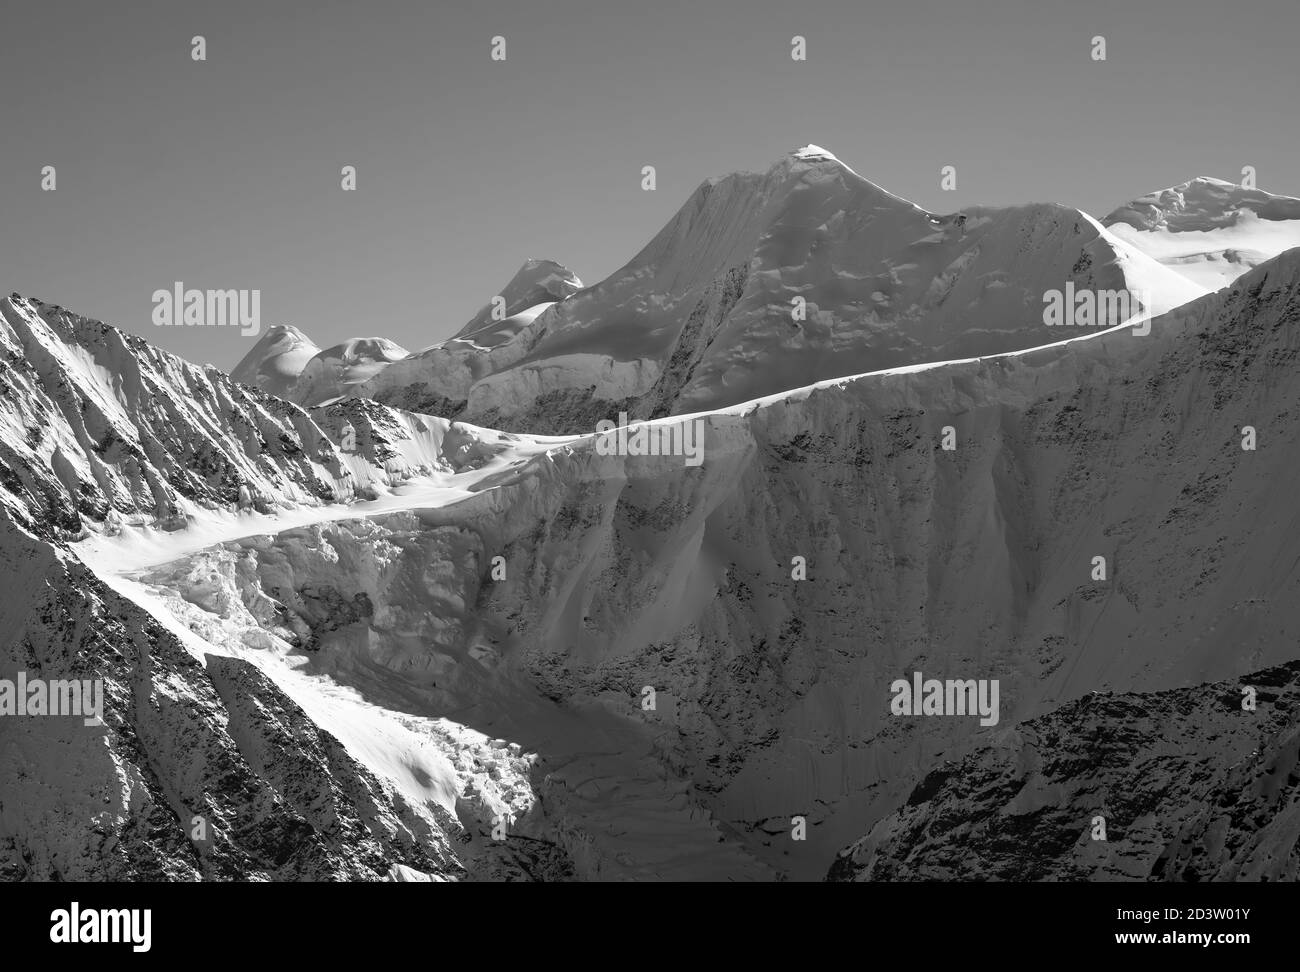 Aereo del Monte Thor e del Ghiacciaio Powell nella catena montuosa di Chugach nell'Alaska centro-meridionale. Foto Stock